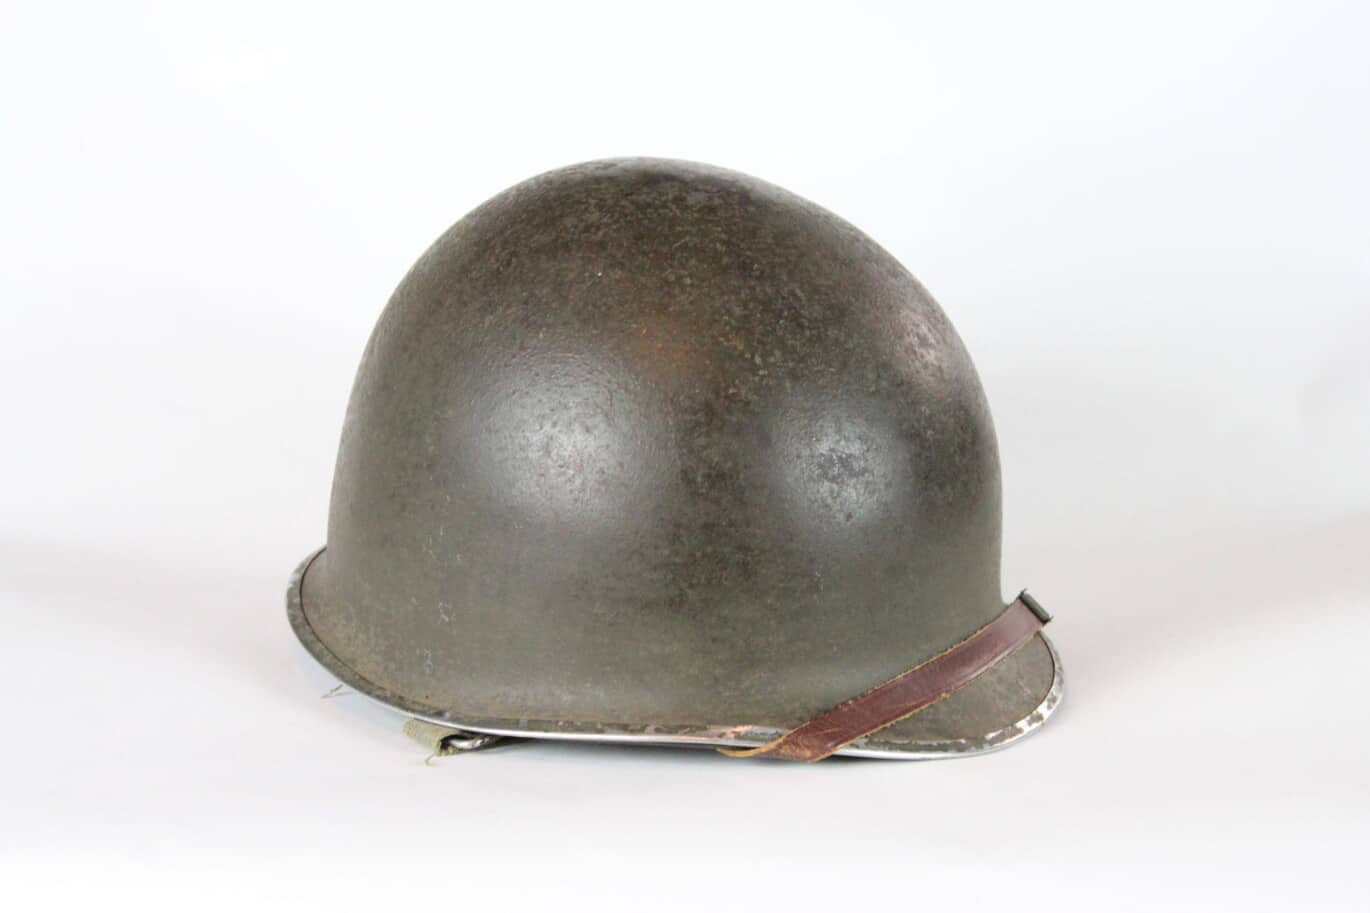 m1 american helmet from world war ii